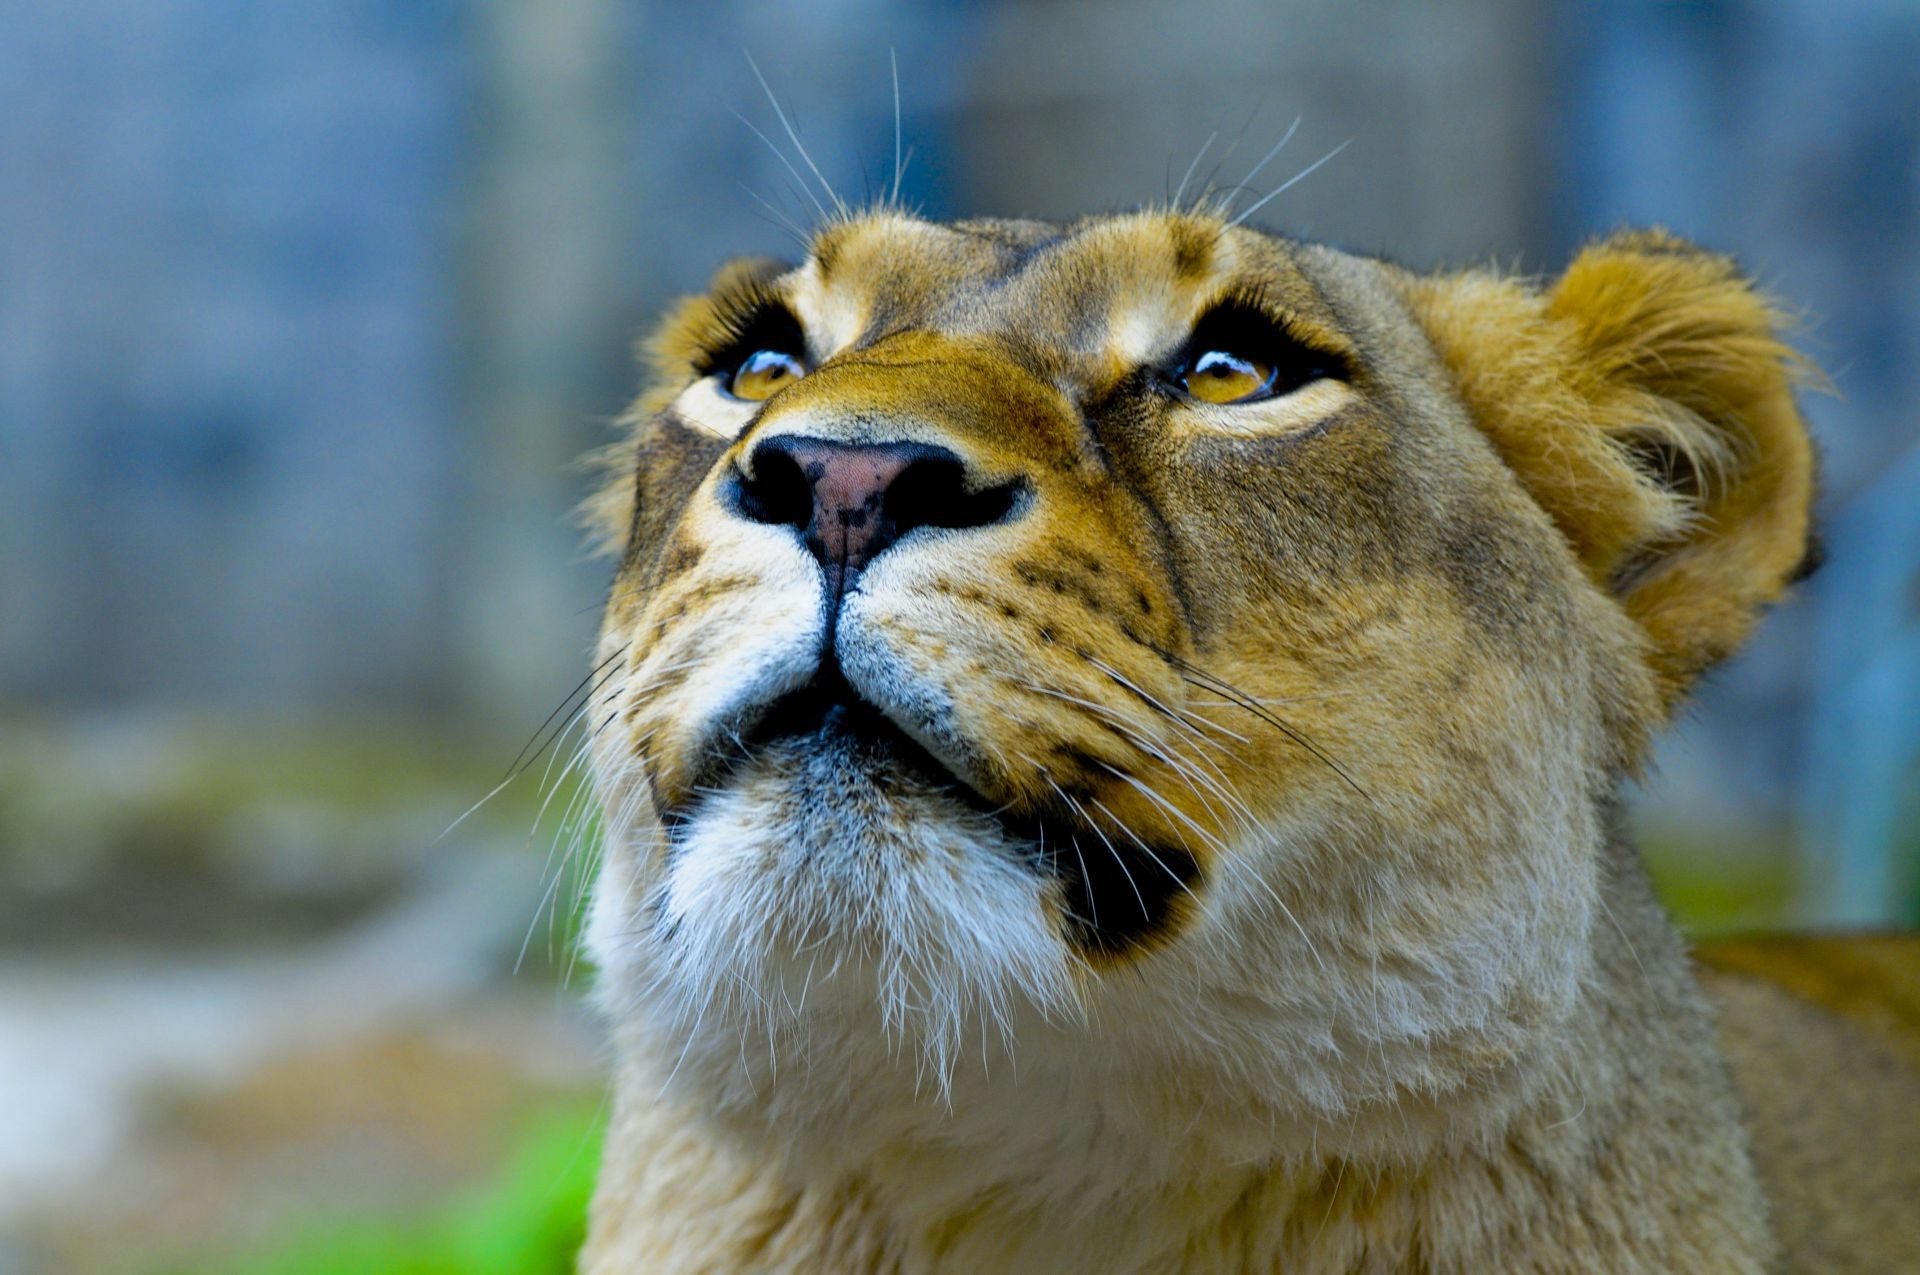 львы млекопитающее кошка дикой природы животное зоопарк лев природа портрет мех дикий хищник глаз